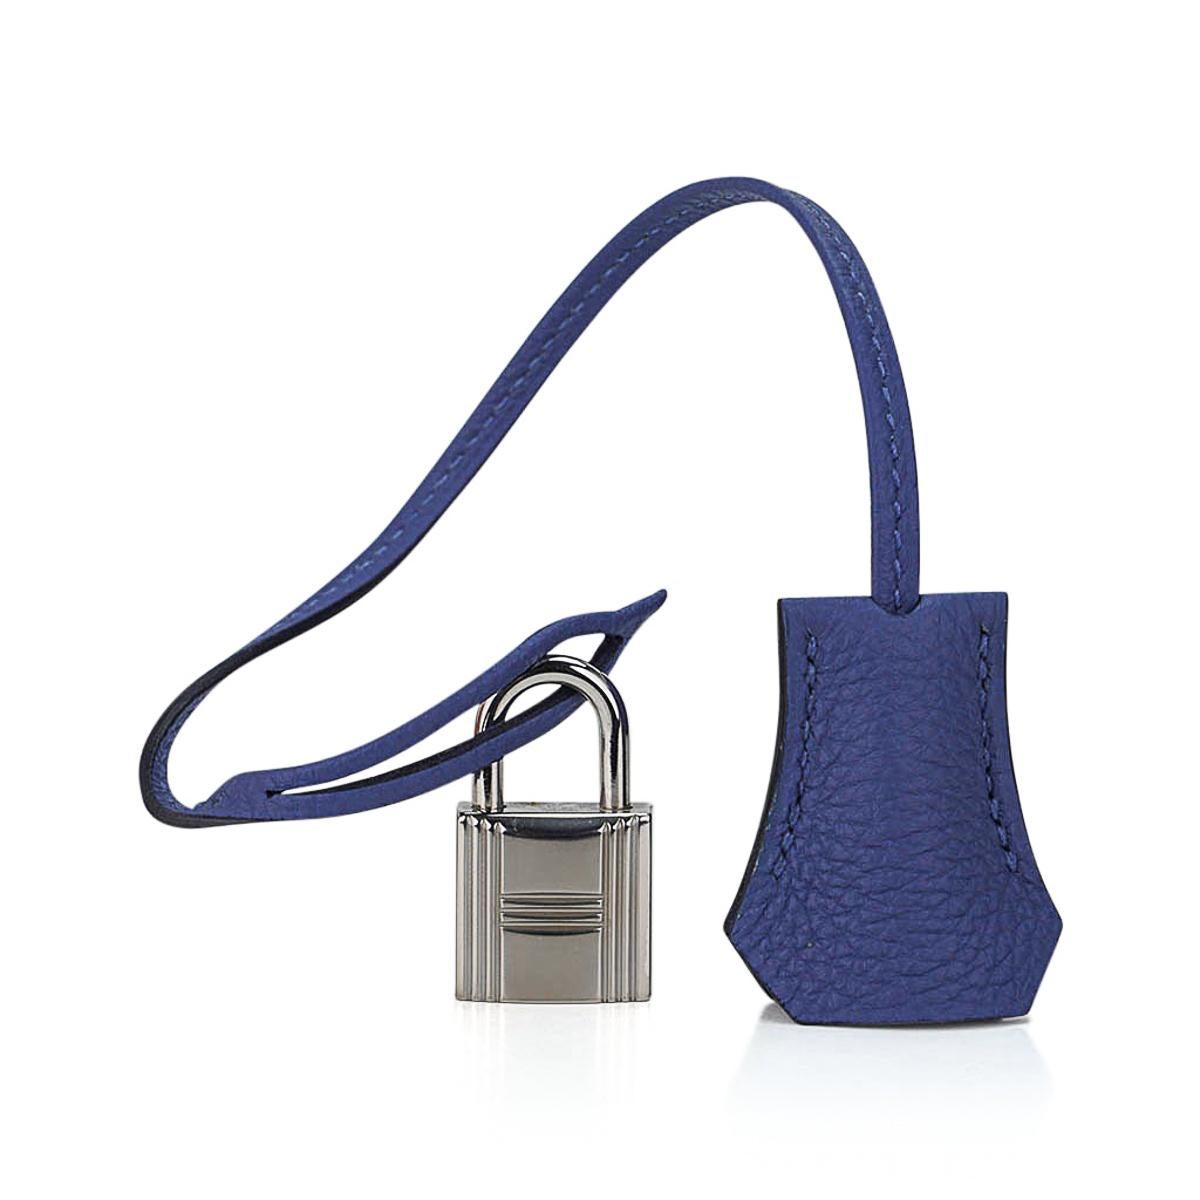 Hermes Birkin 40 Bag Blue de Prusse Palladium Hardware Togo Leather For Sale 5